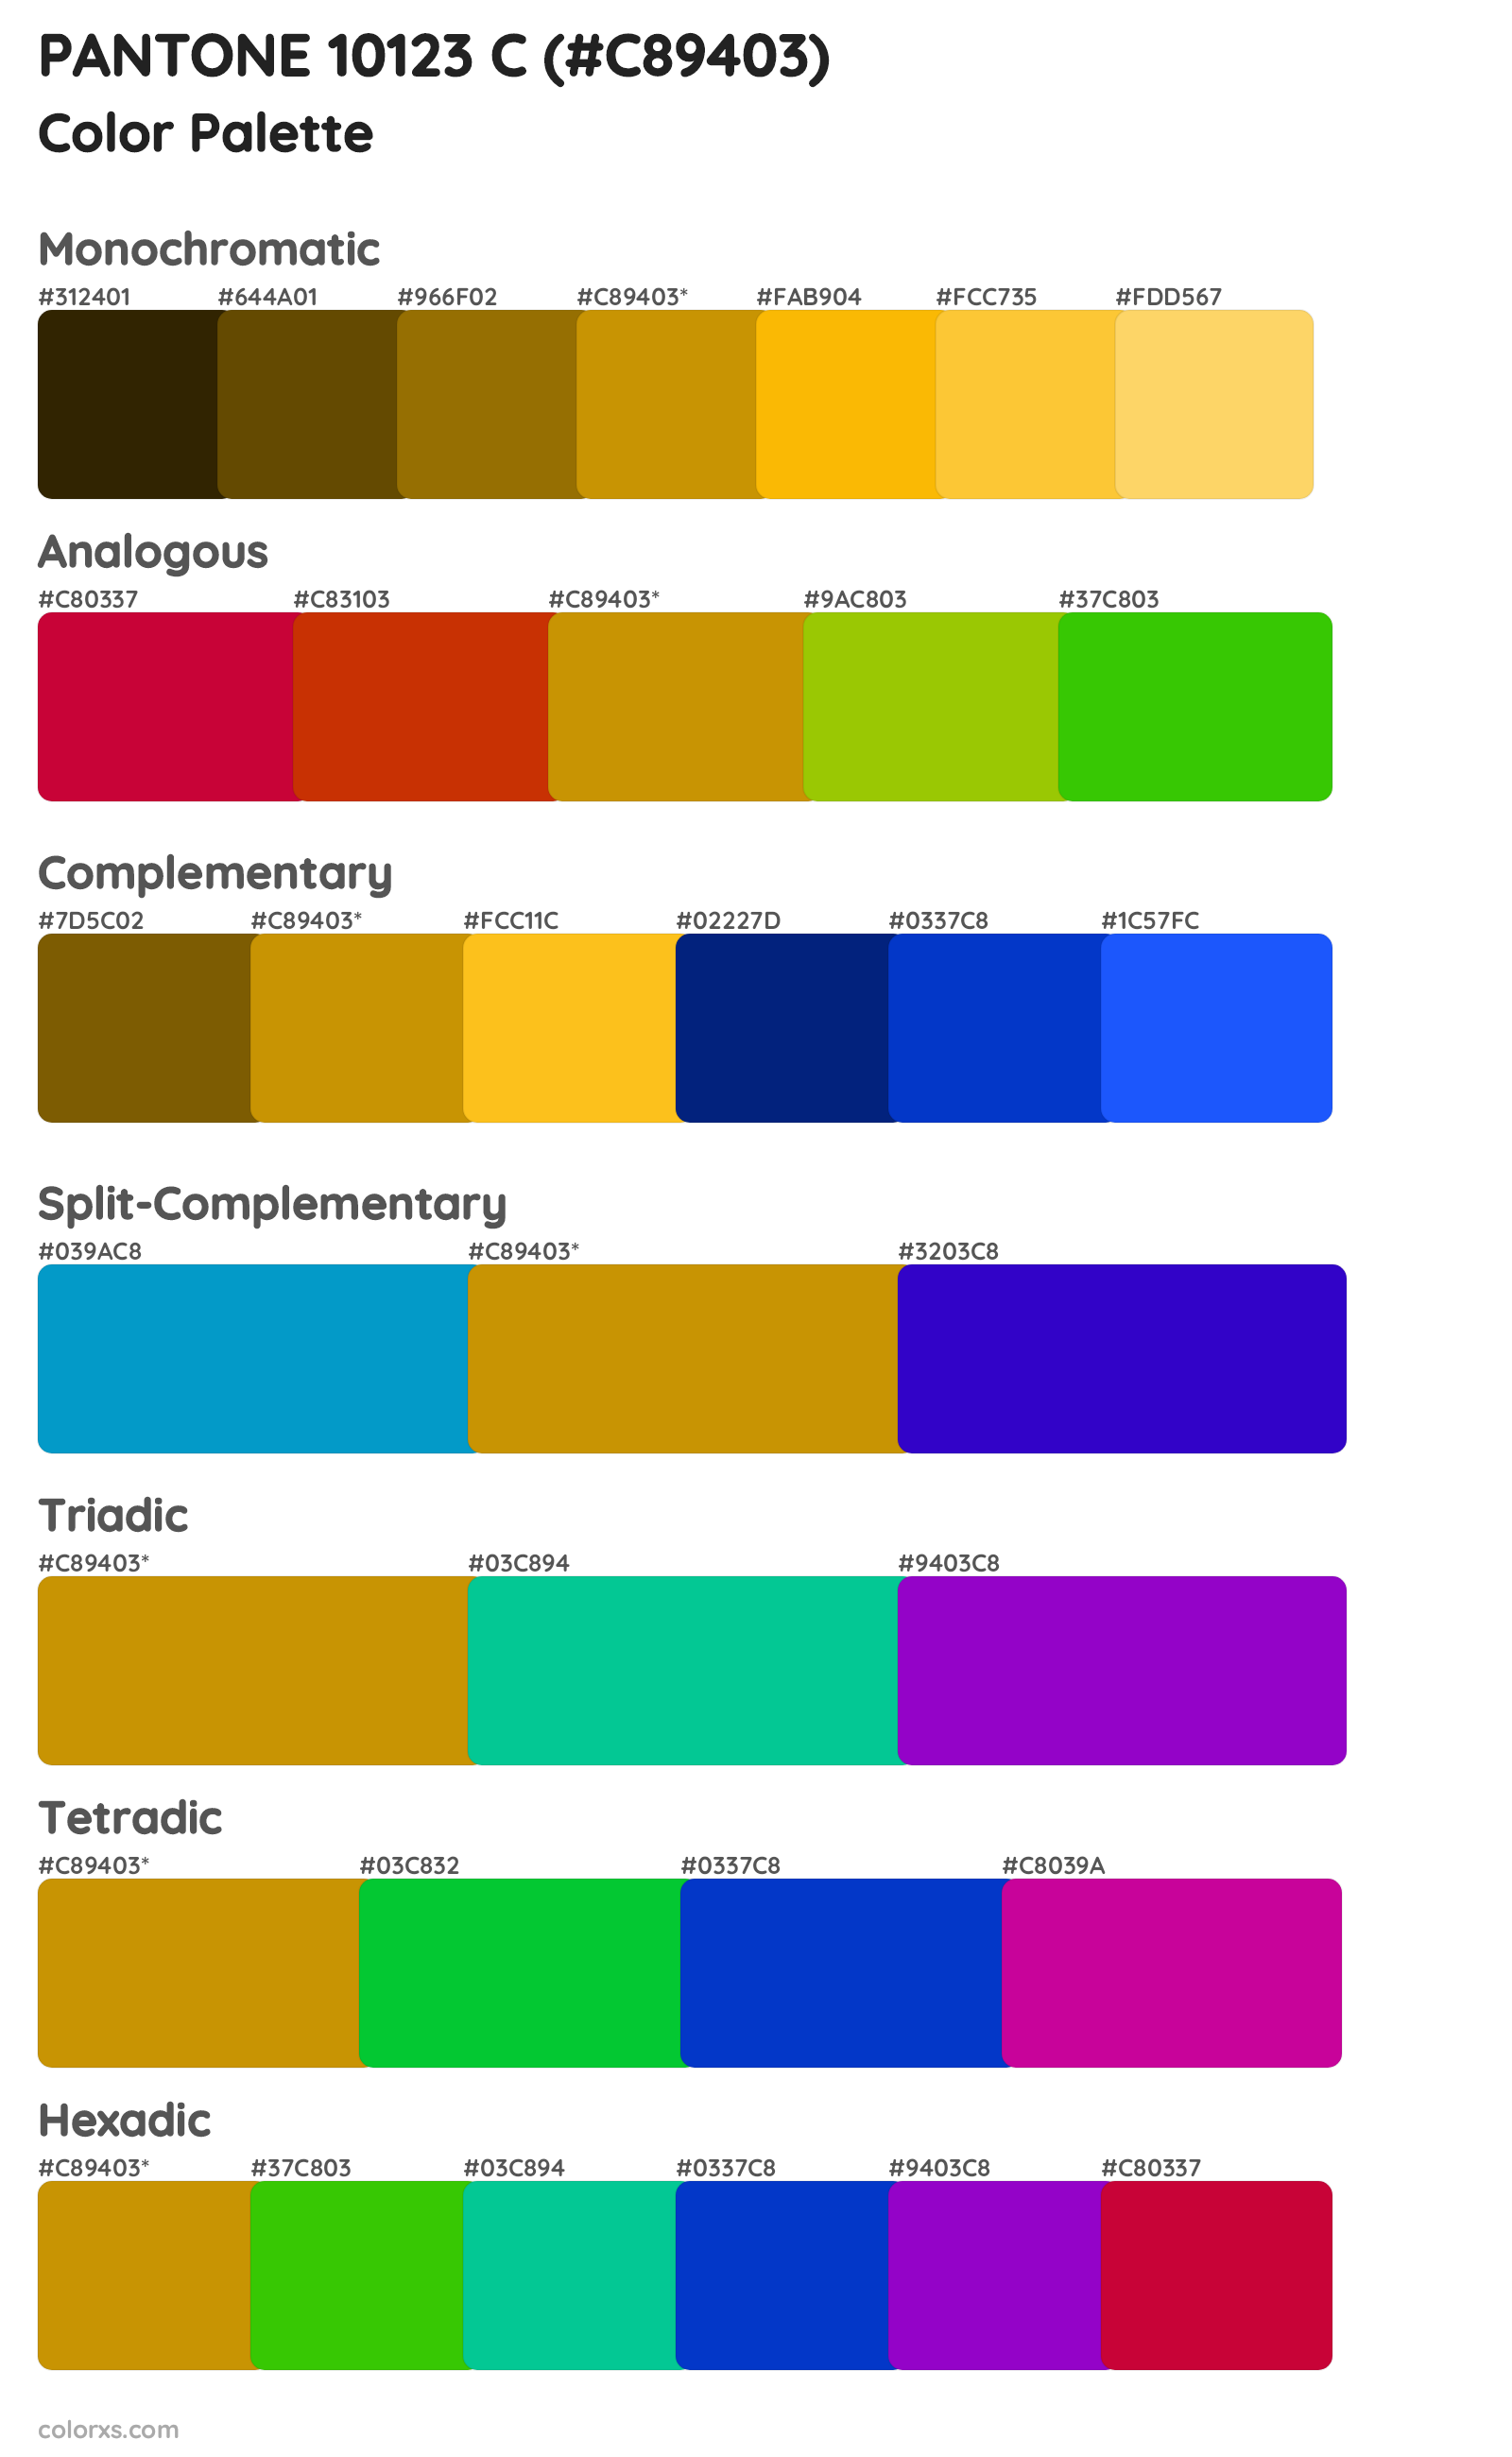 PANTONE 10123 C Color Scheme Palettes